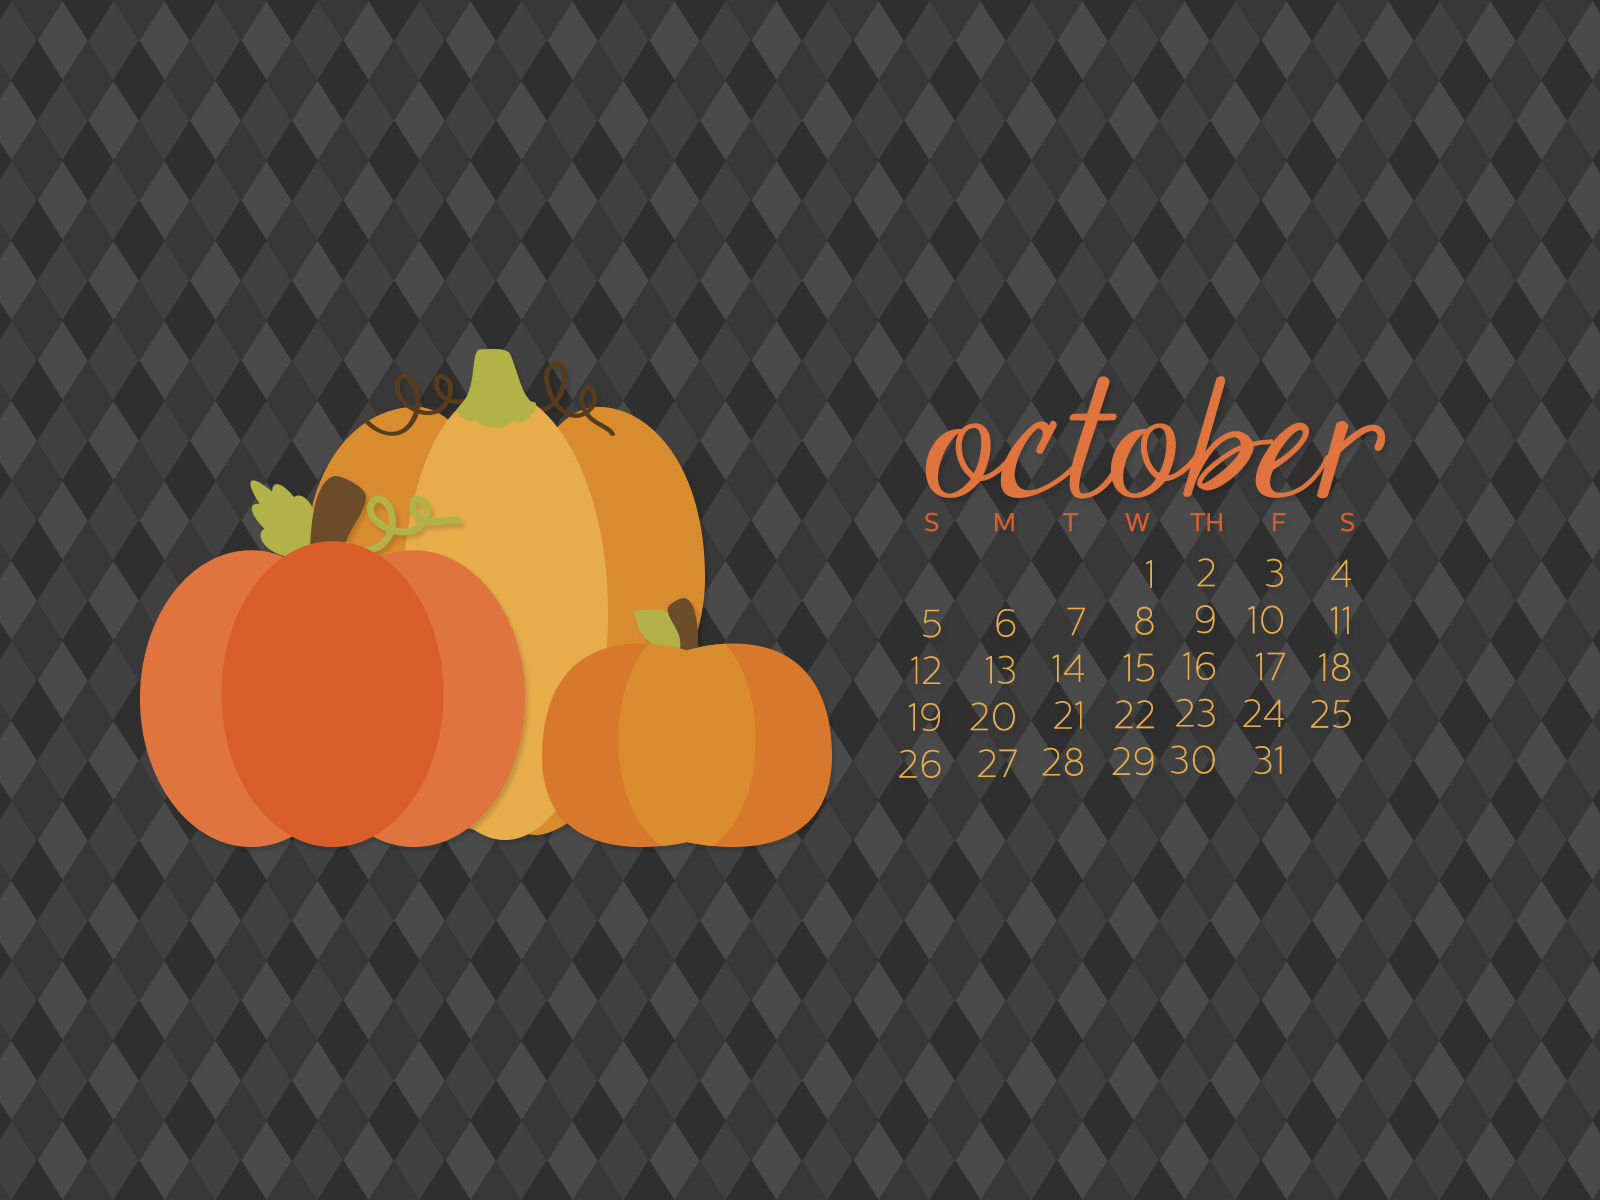 October Calendar Wallpaper Desktop Simply Brenna